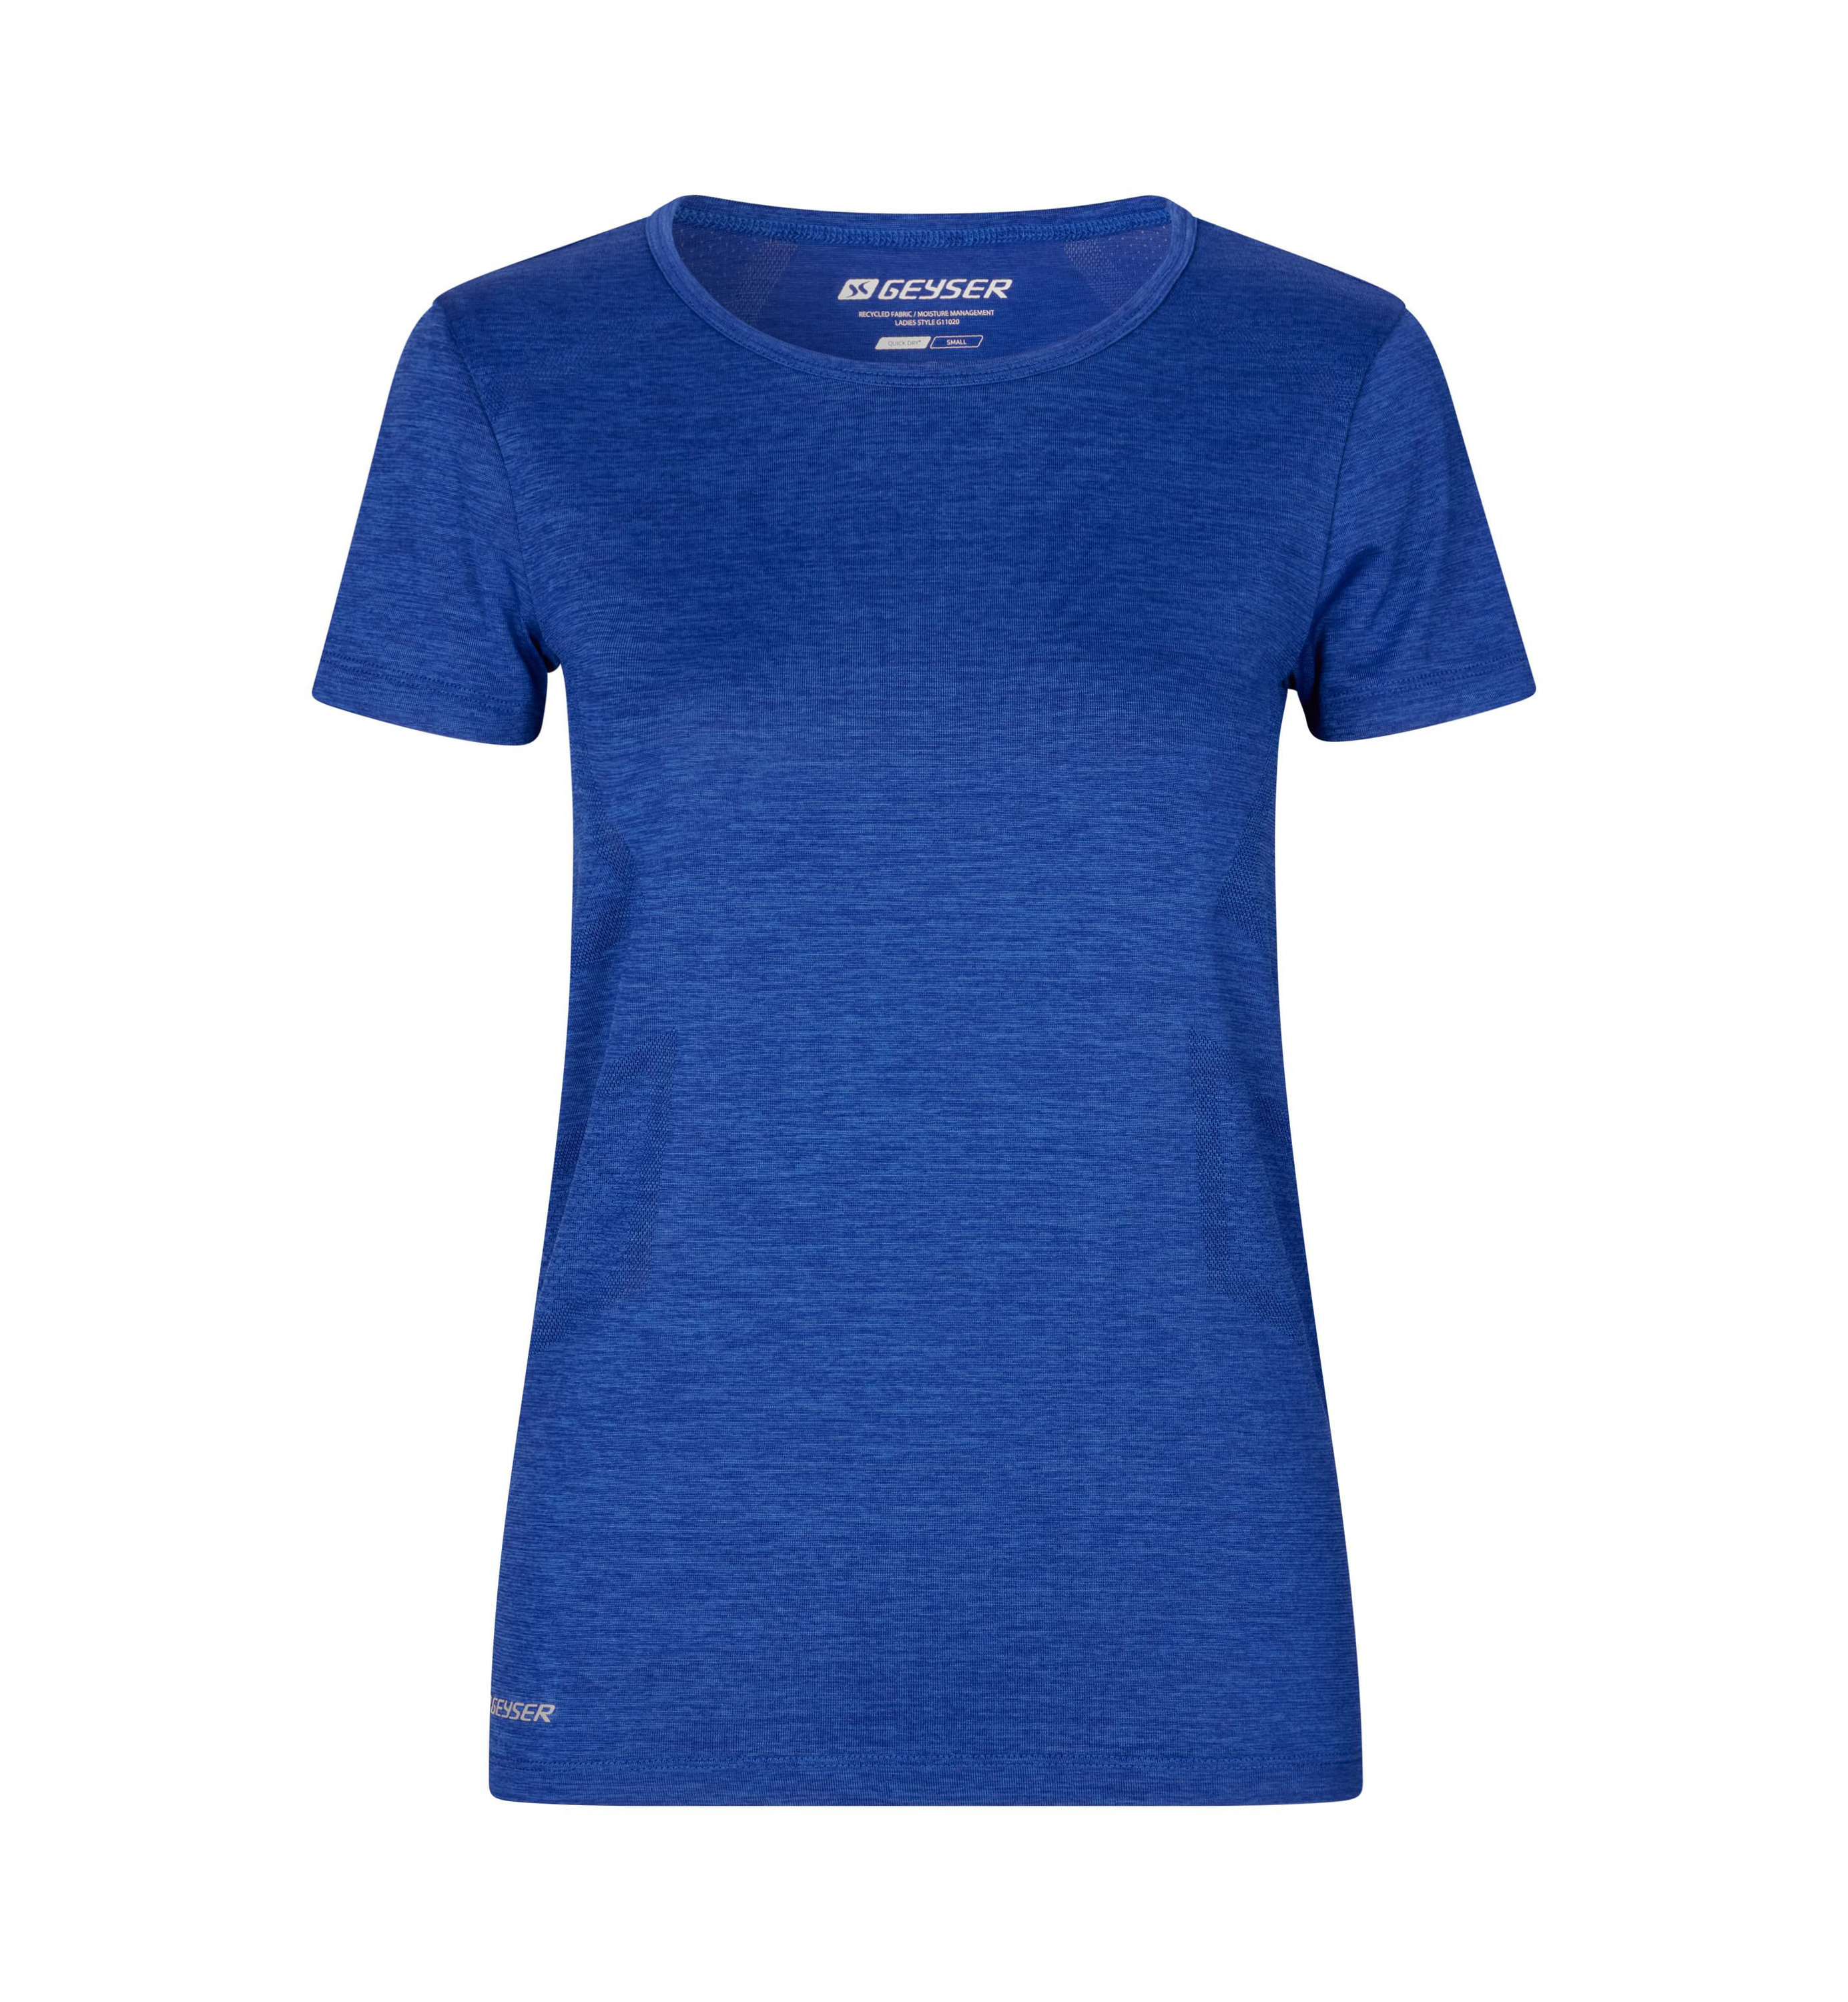 Спортивная футболка GEYSER seamless, цвет Königsblau meliert